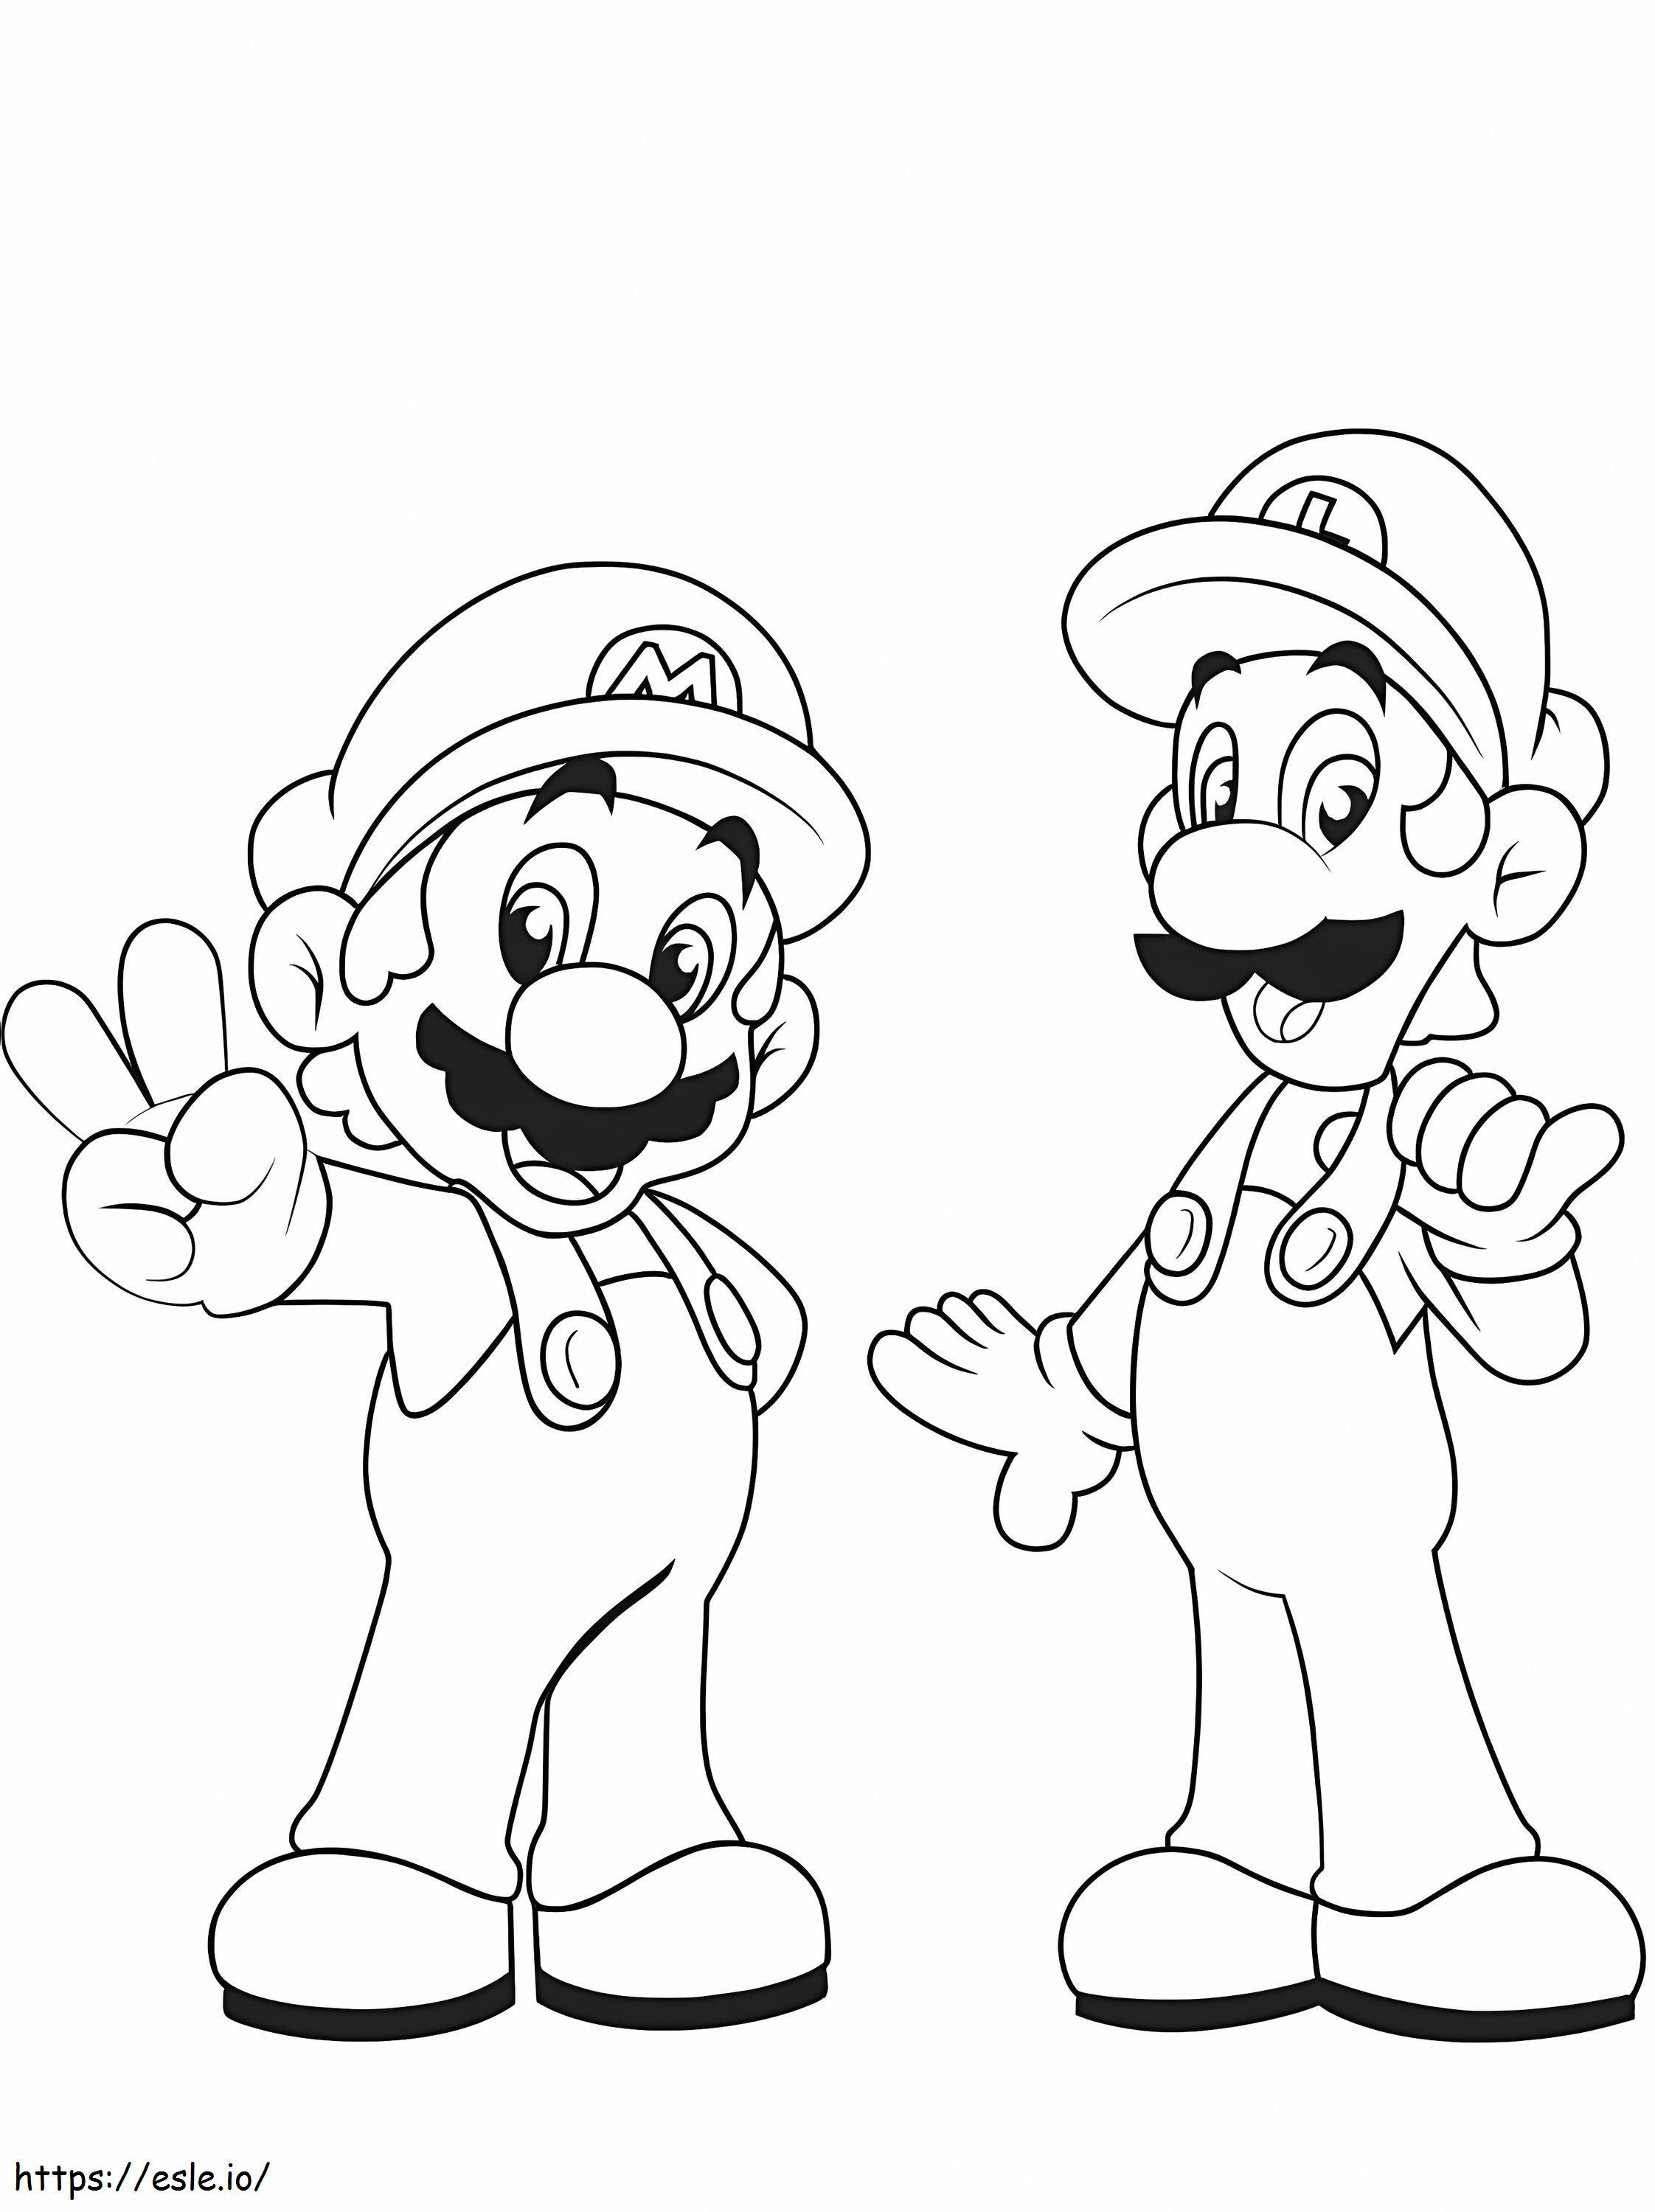 Mario und Luigi ausmalbilder